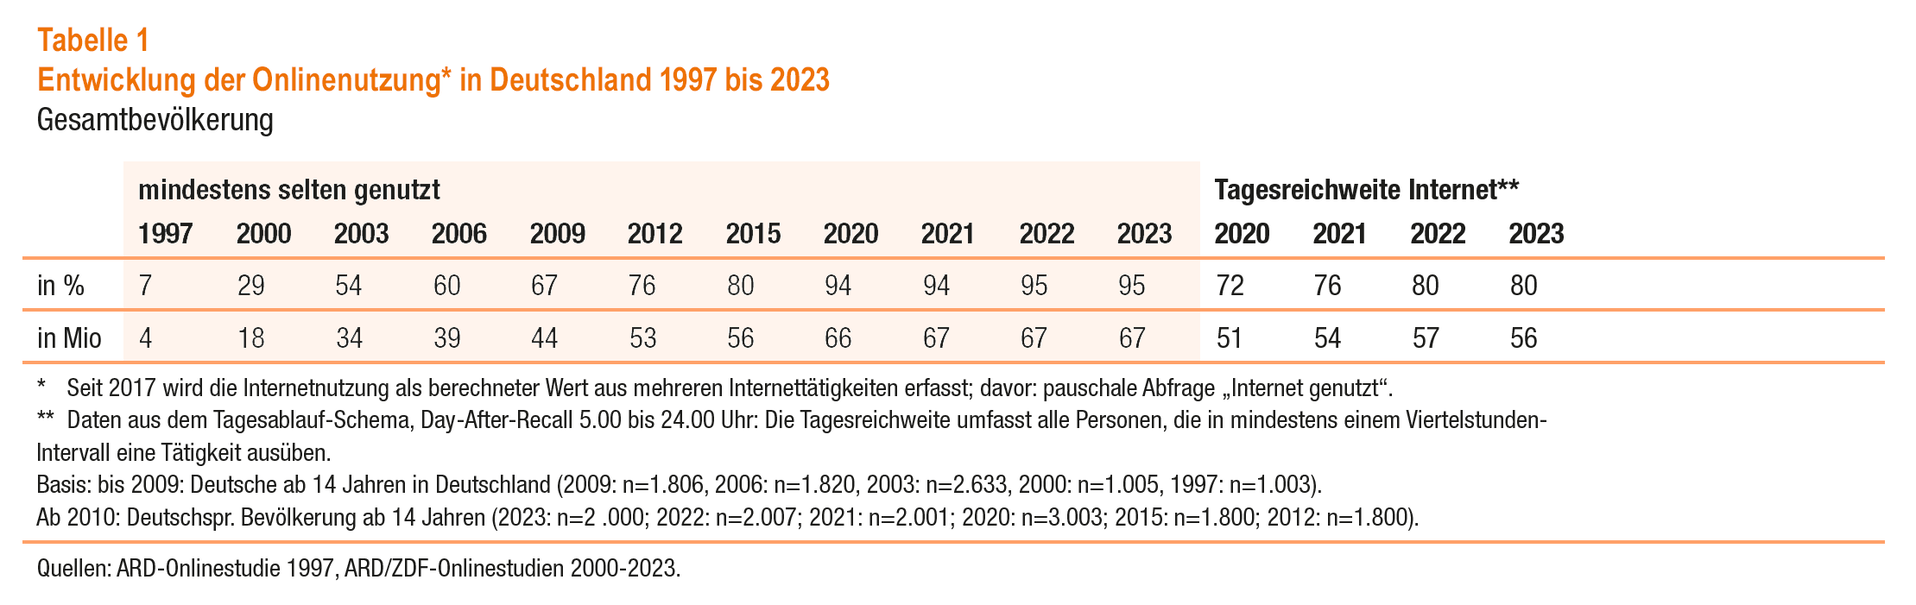 Entwicklung der Onlinenutzung in Deutschland 1997 bis 2023 (© ARD/ZDF-Onlinestudie)